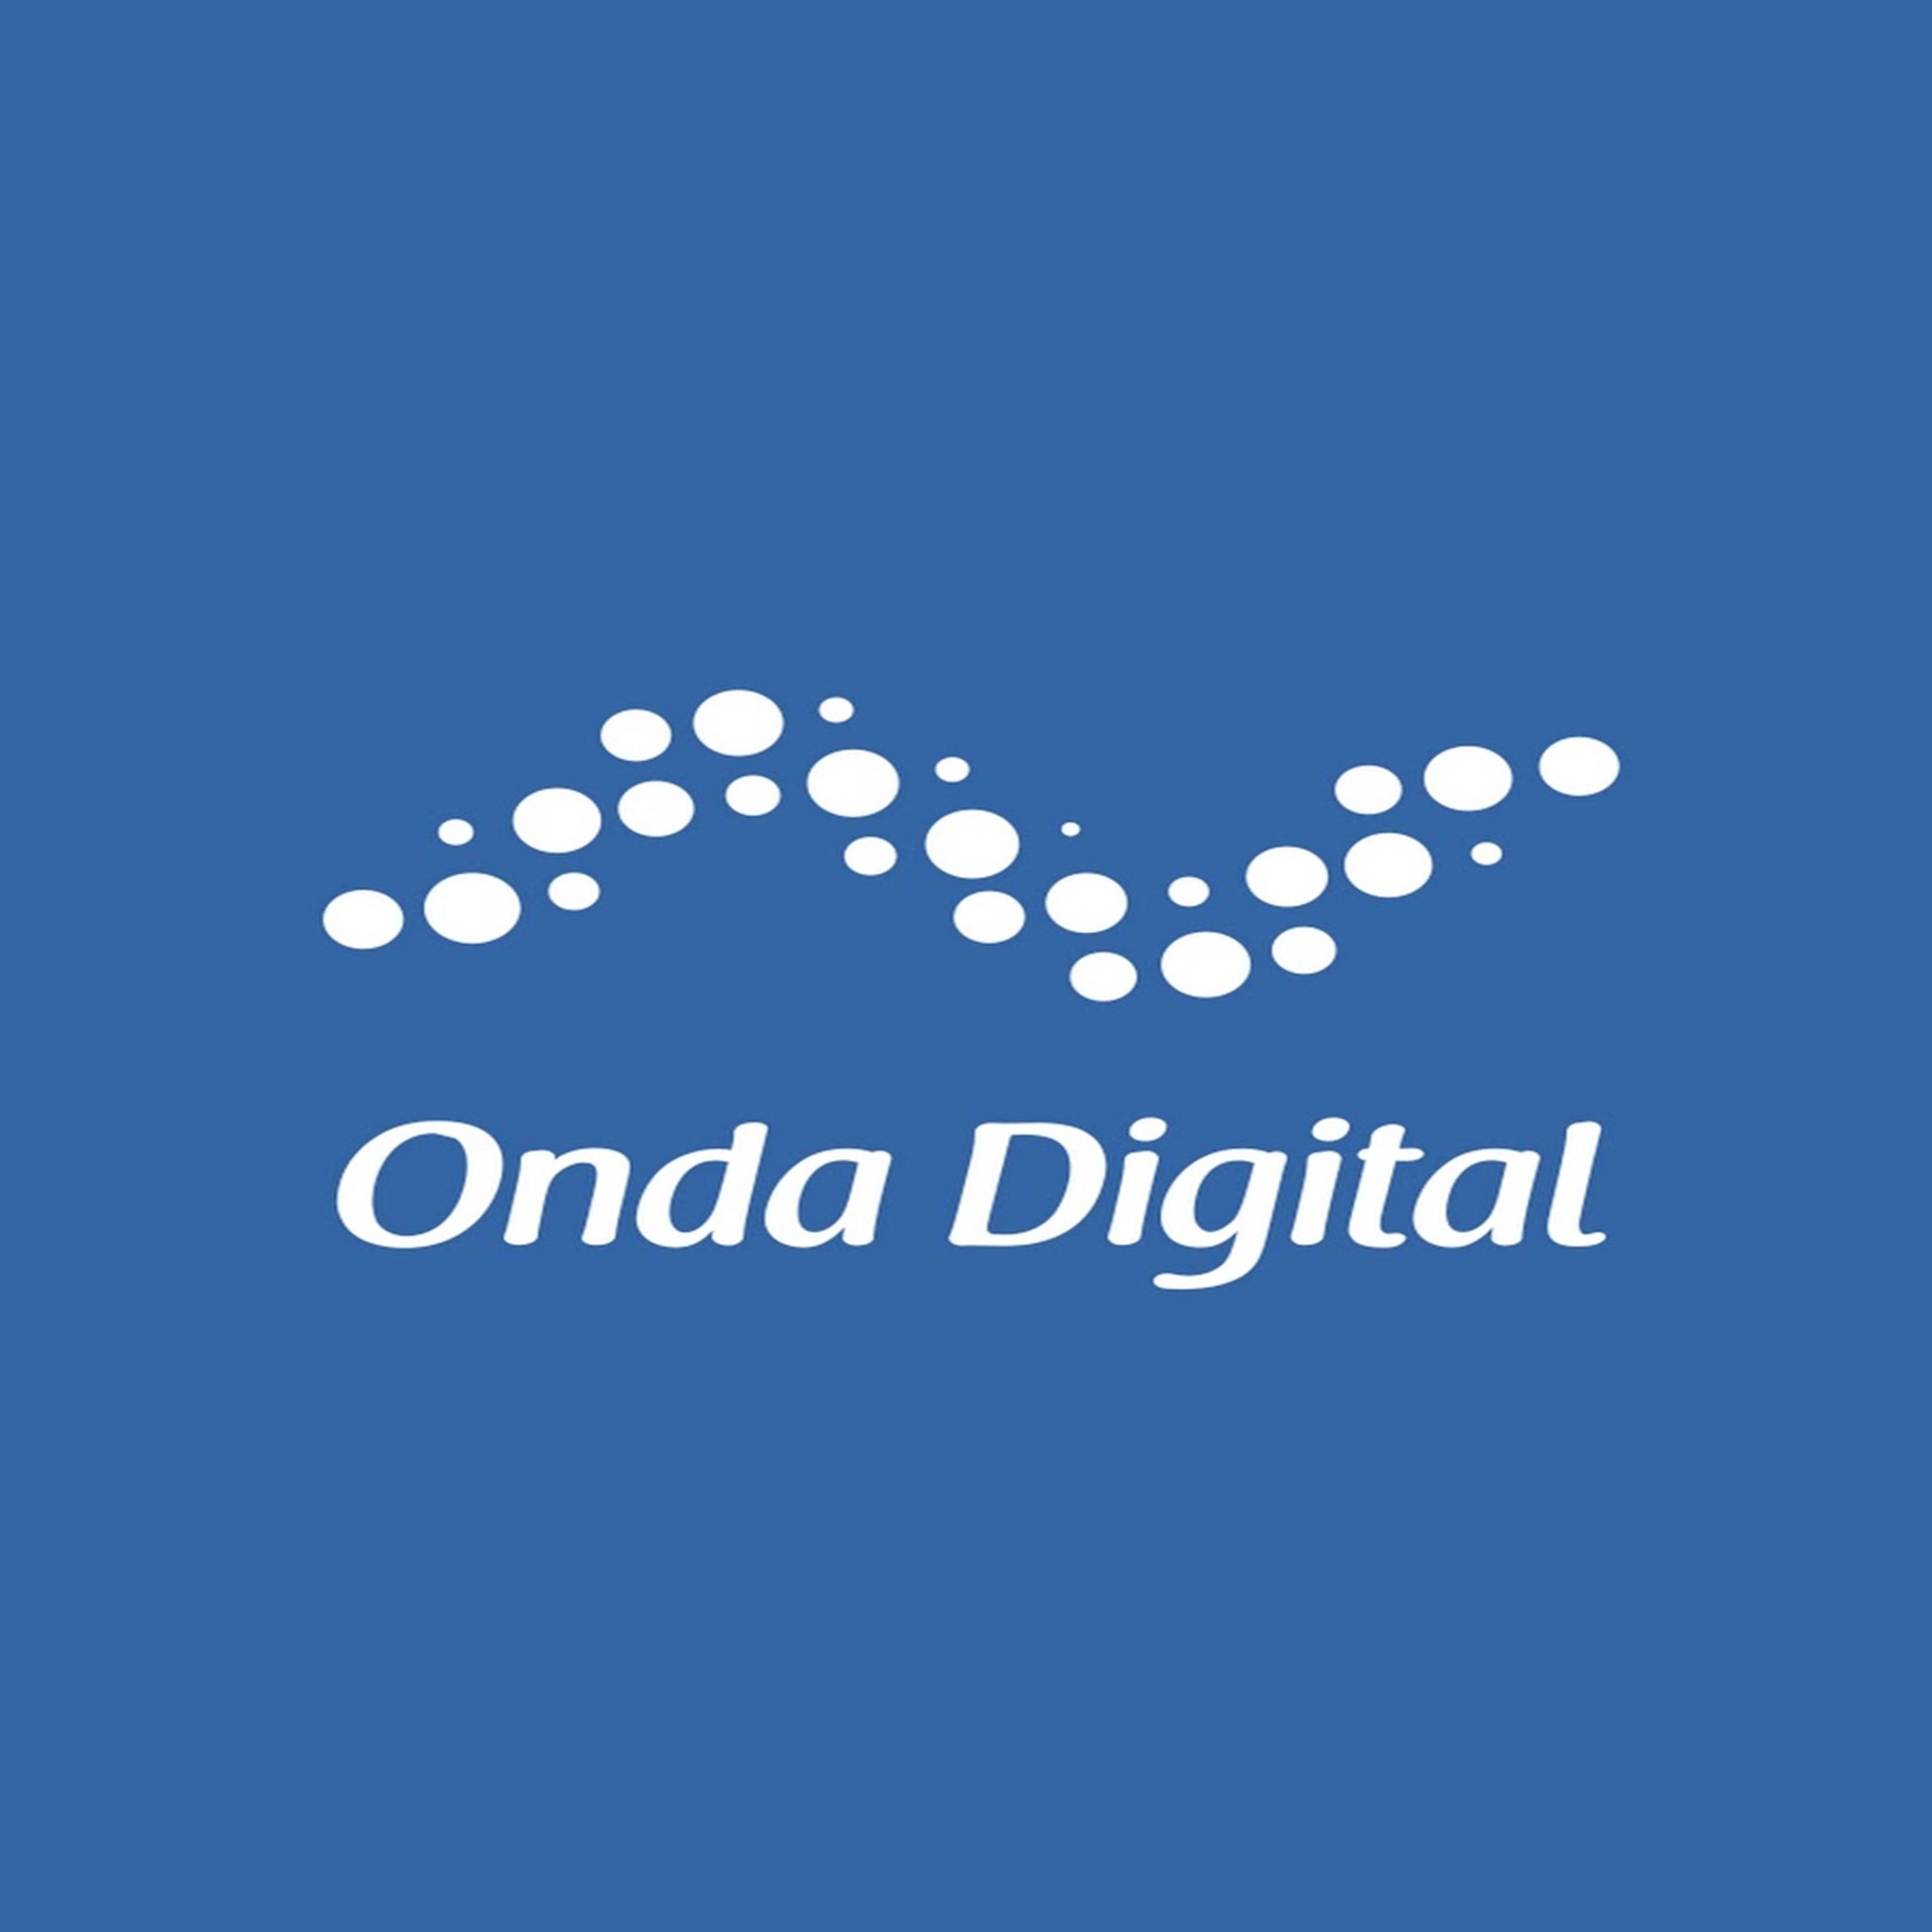 Grupo Onda Digital seleciona bolsistas e voluntários